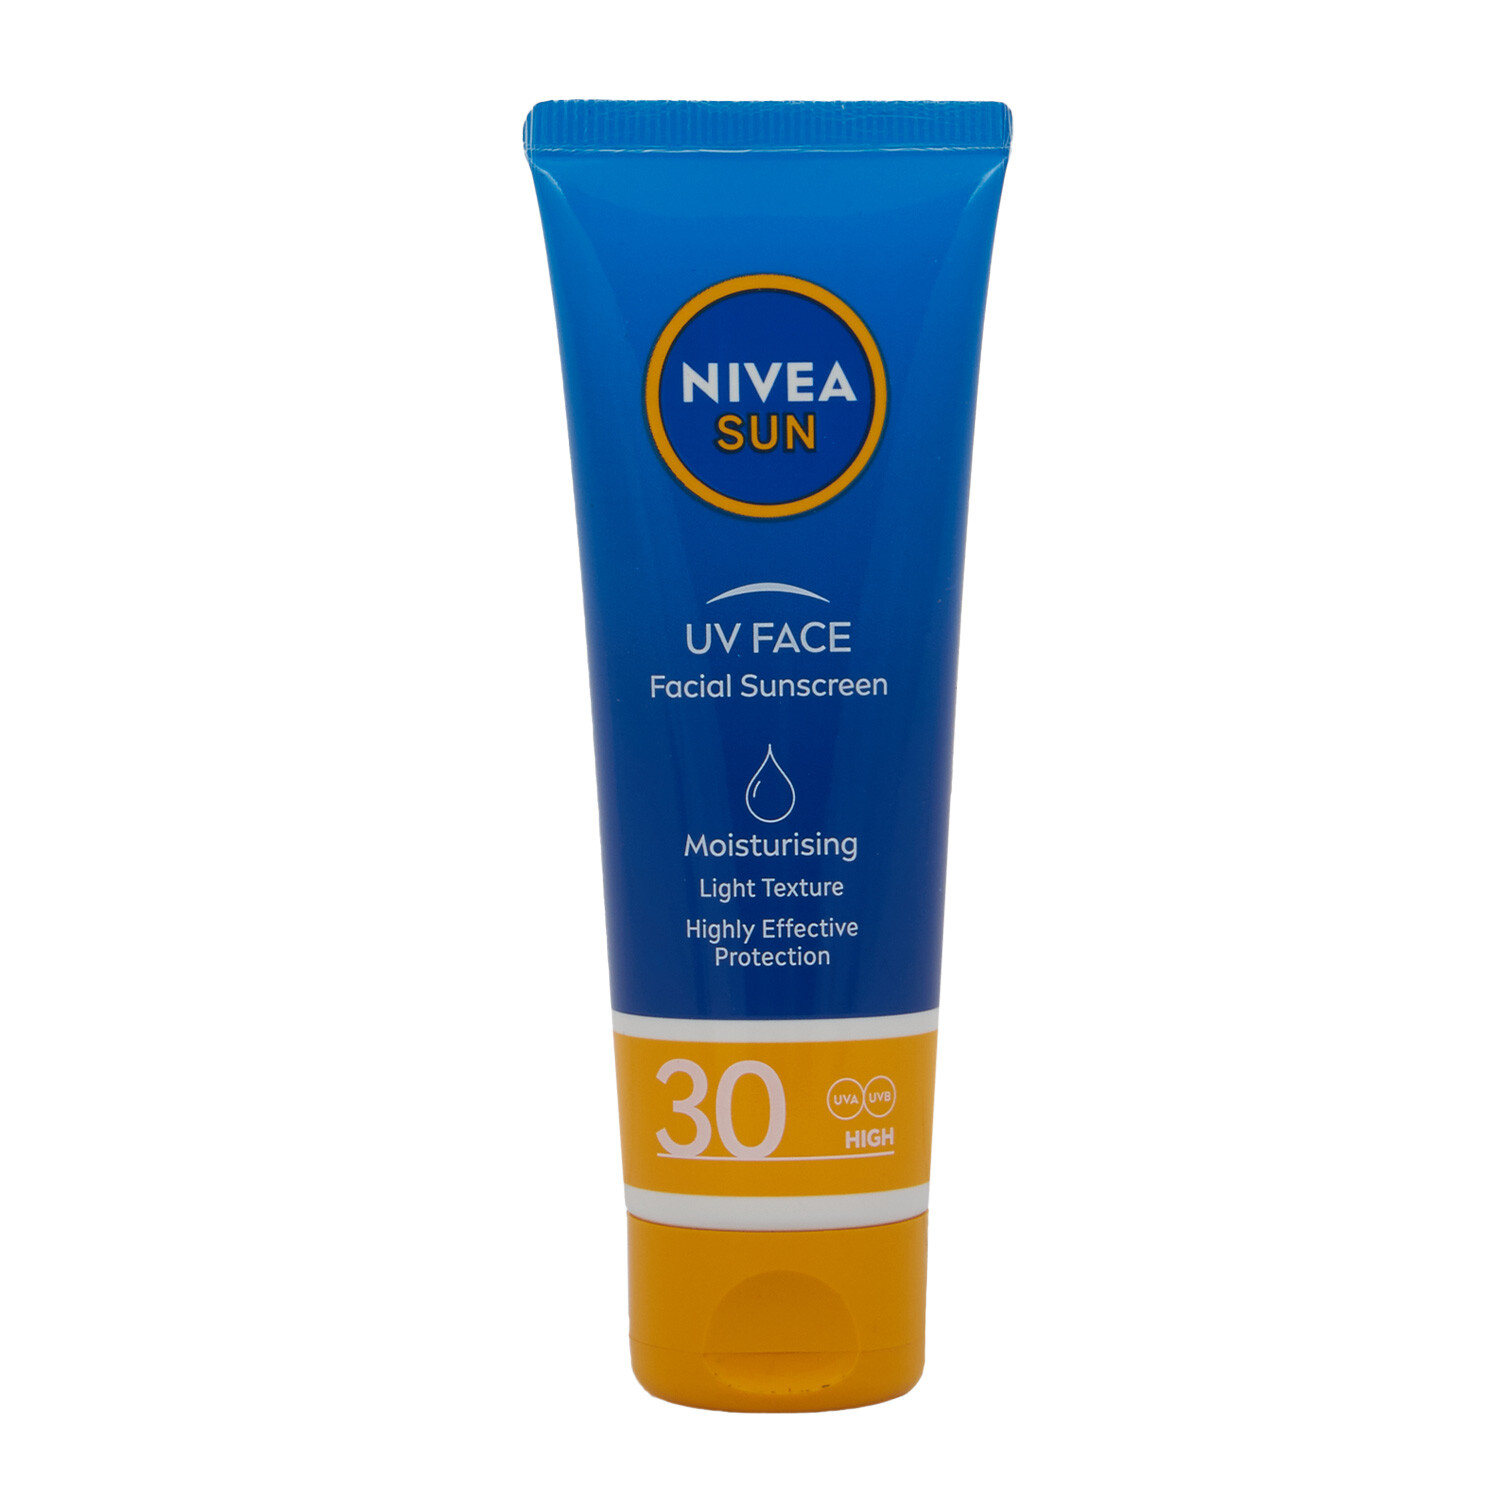 Nivea Sun UV Face Facial Sunscreen - Blue Image 1